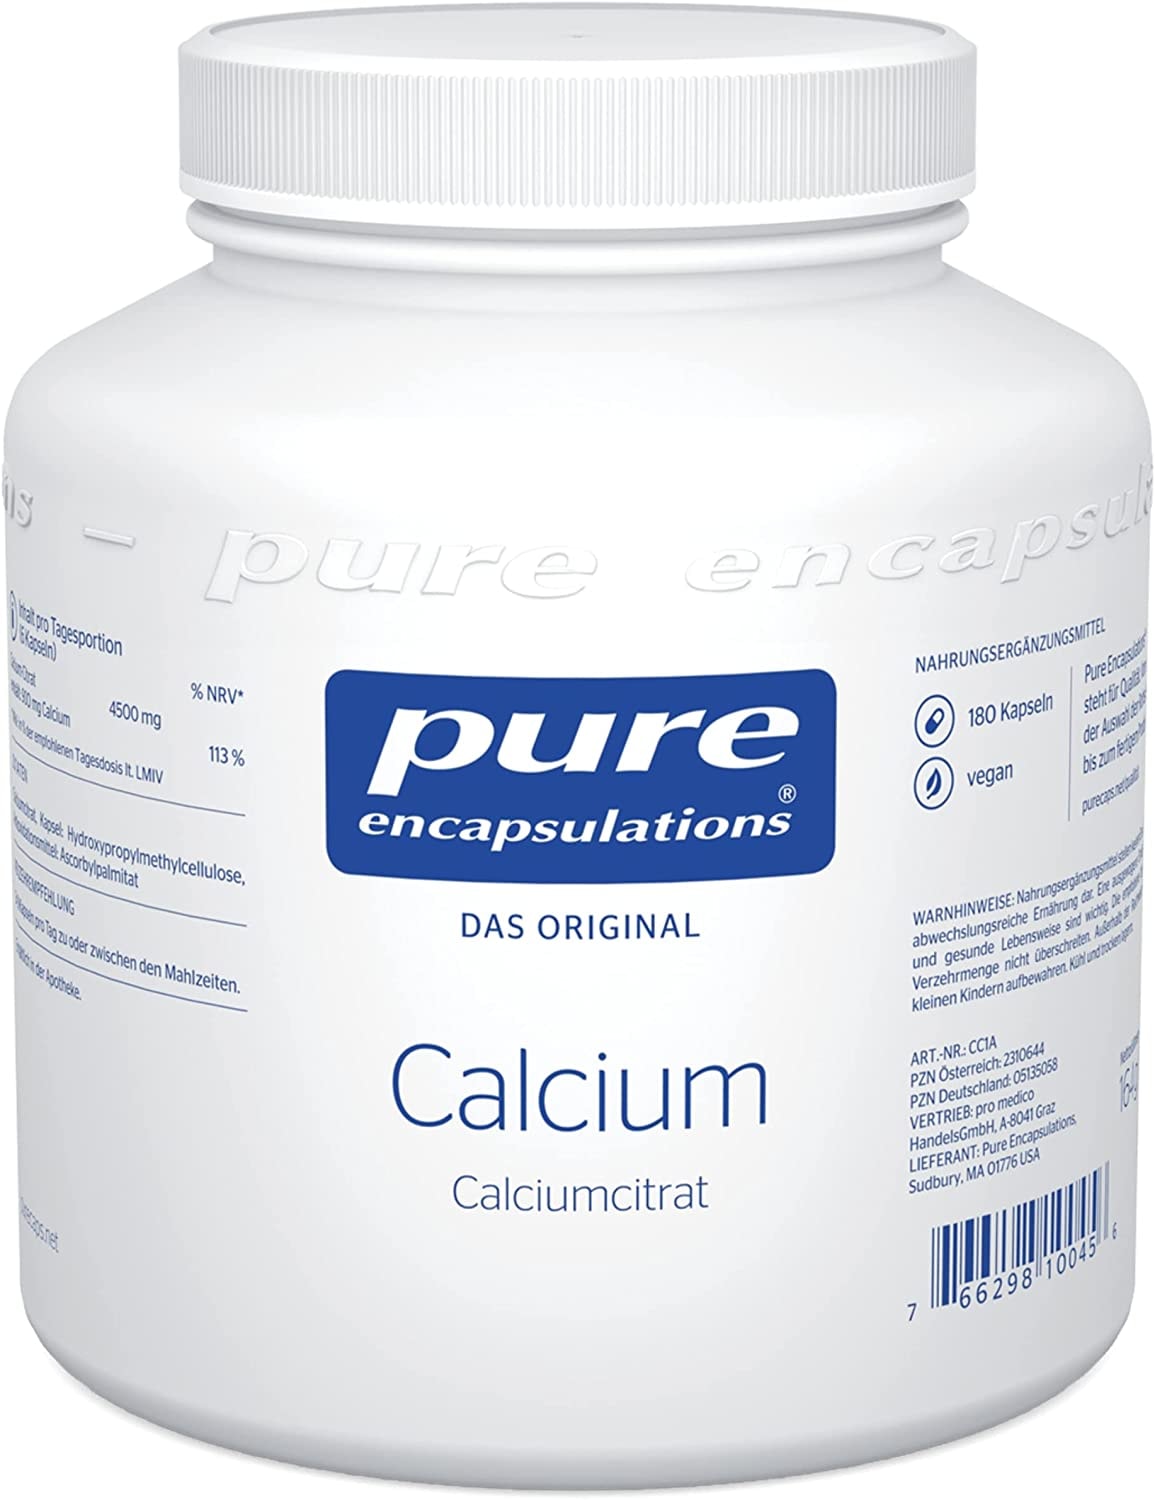 Pure Encapsulations - Calcium (Calciumcitrat) - optimal resorbierbares Calciumcitrat - 180 vegane Kapseln